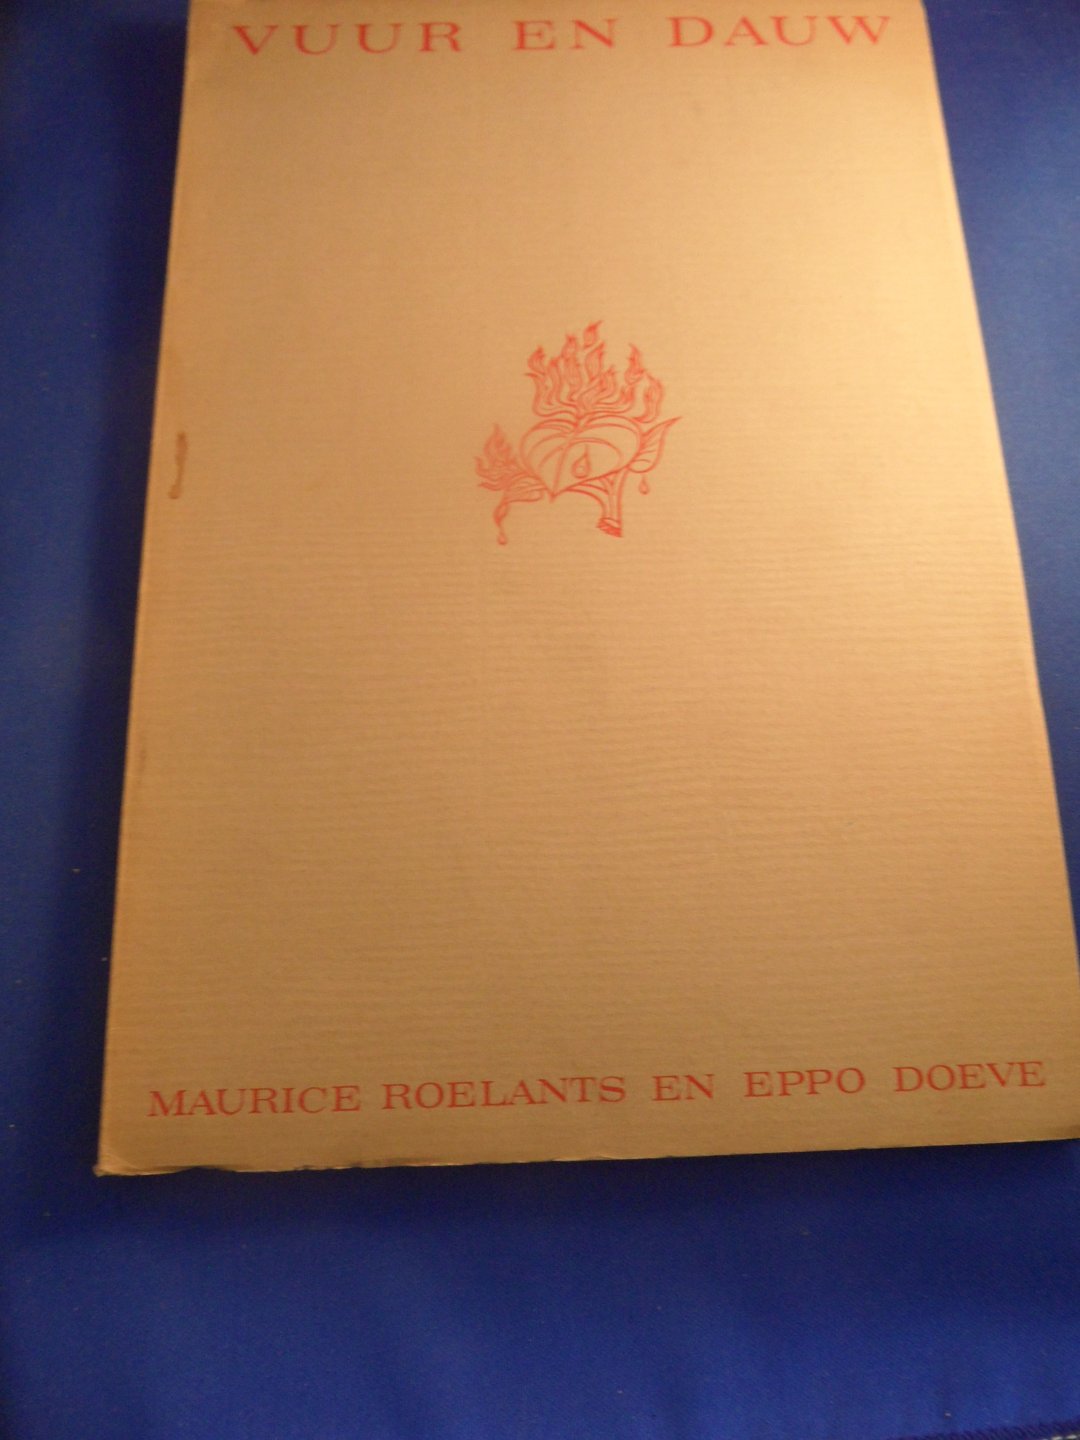 Roelants Maurice, tekeningen van Eppo Doeve - Vuur en dauw